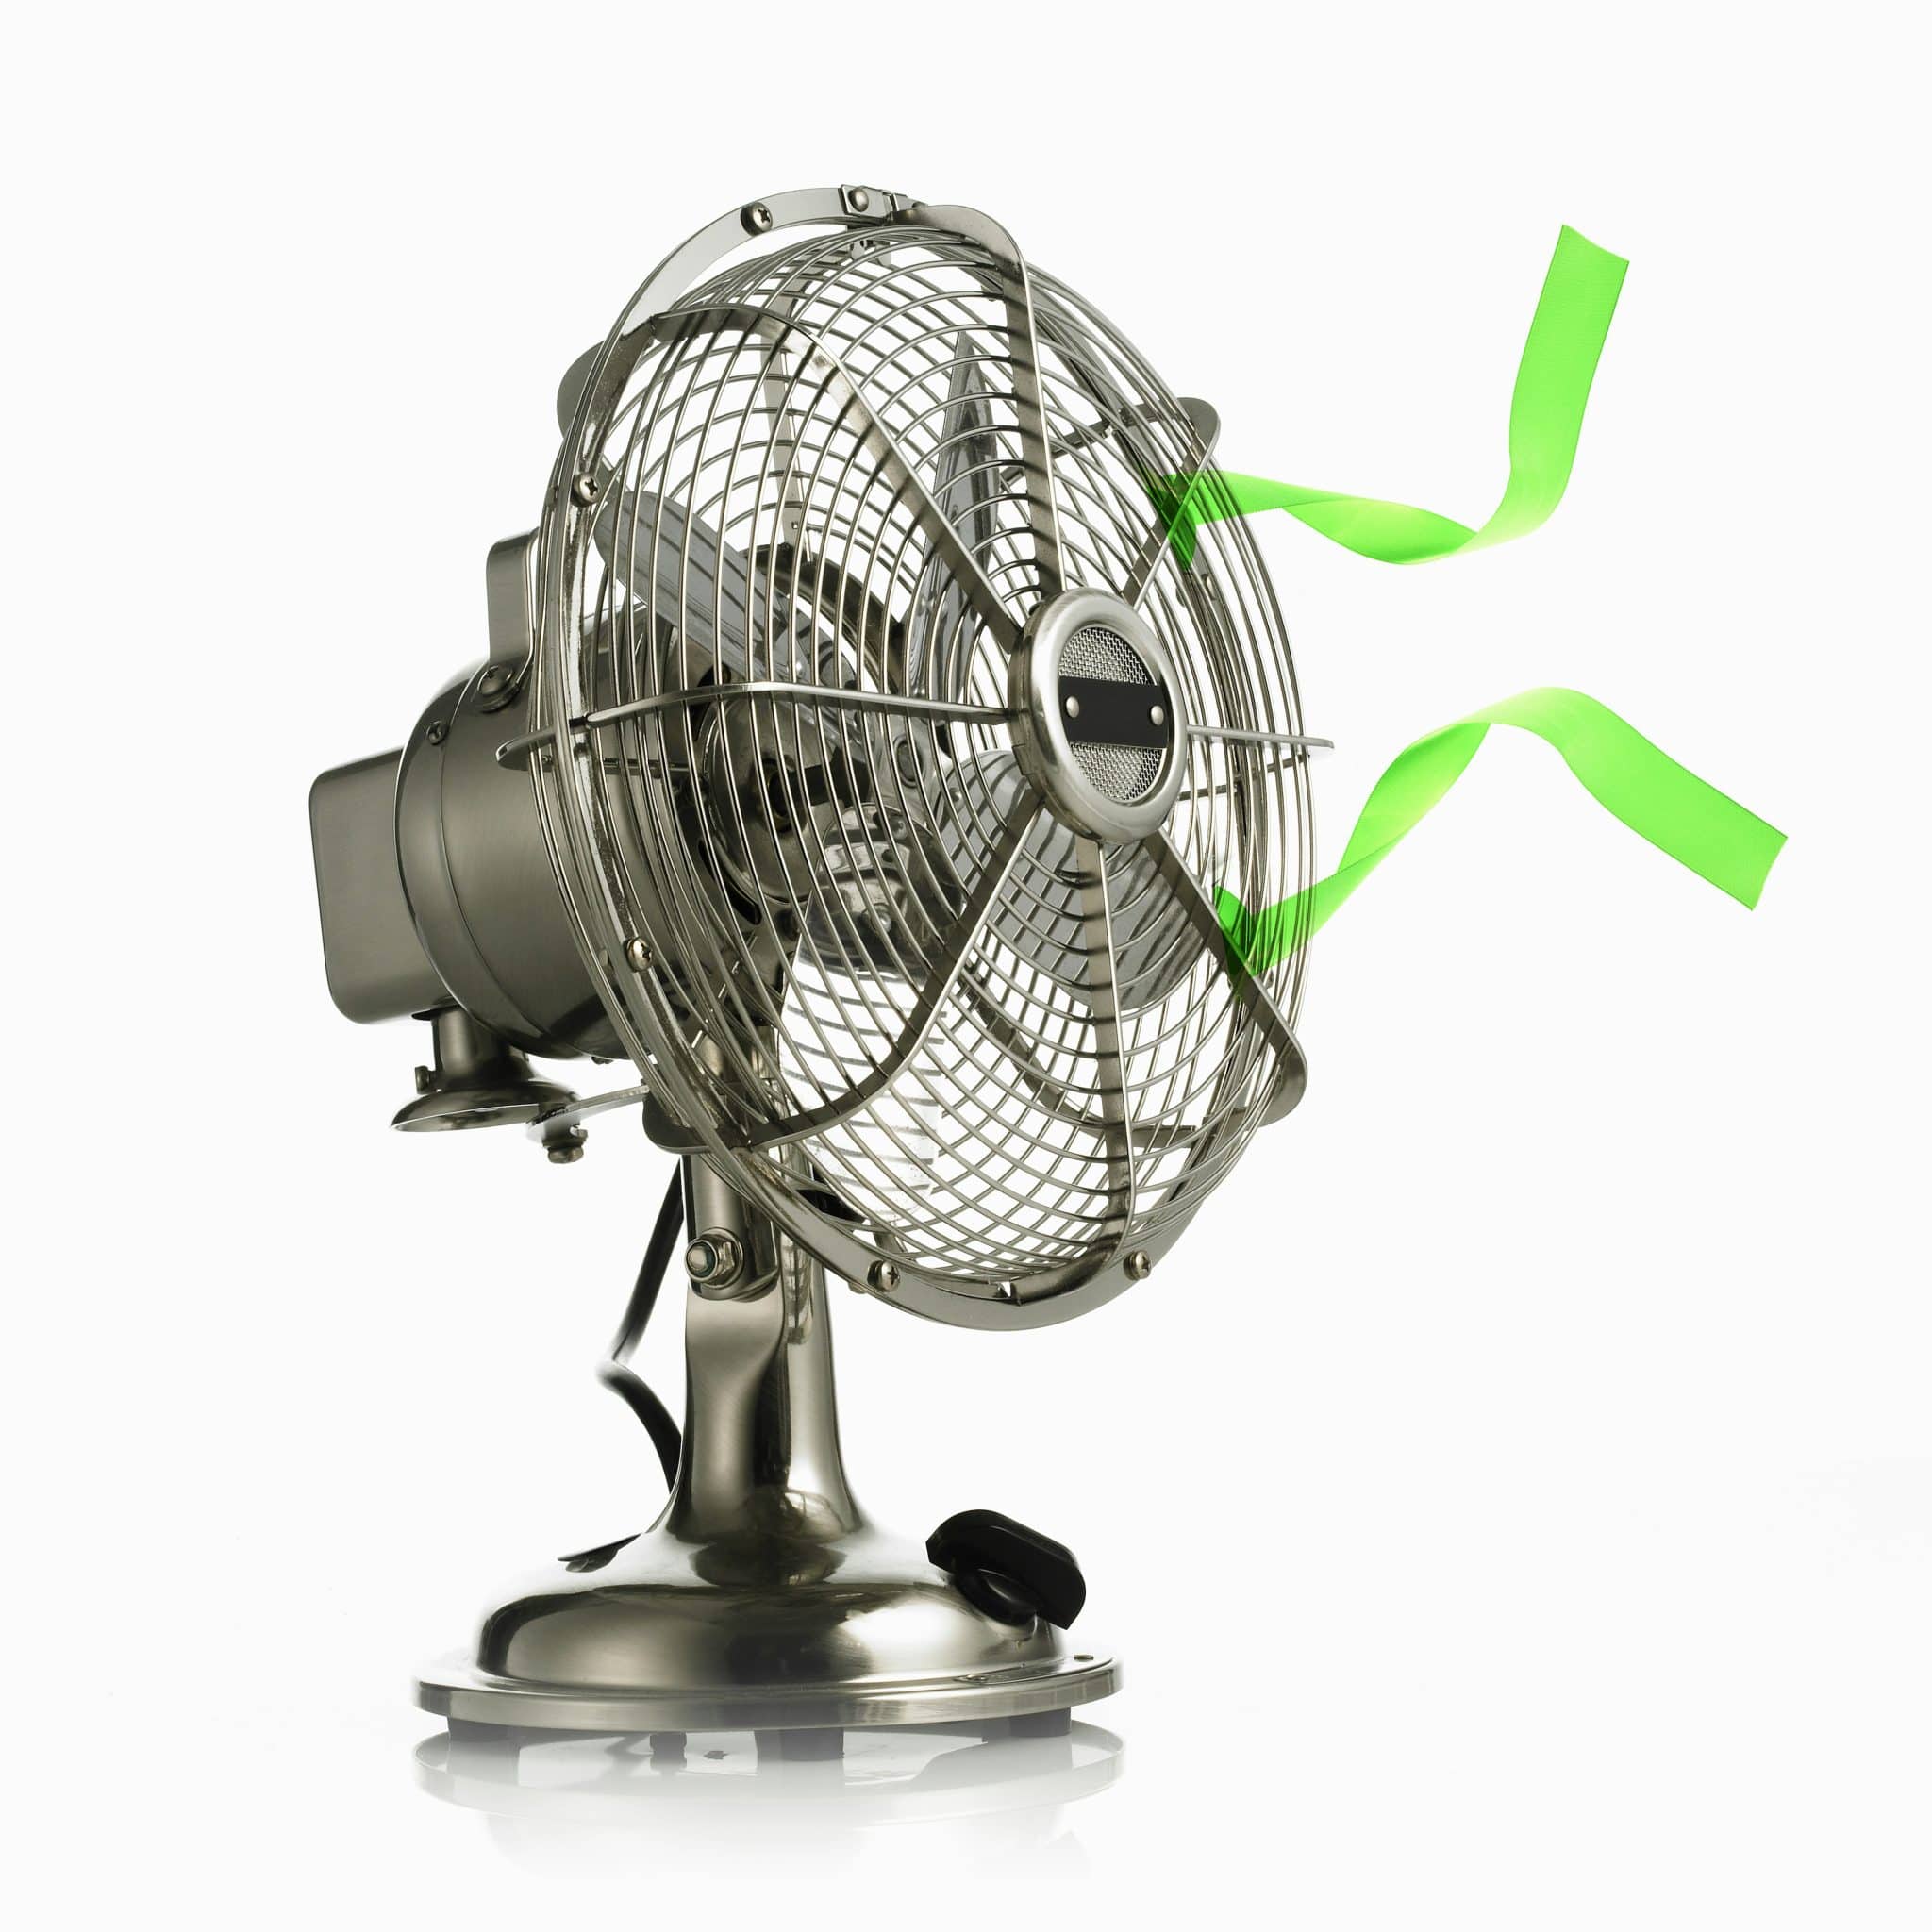 Ventilateur connecté : Les ventilateurs refroidissent-ils une pièce ?